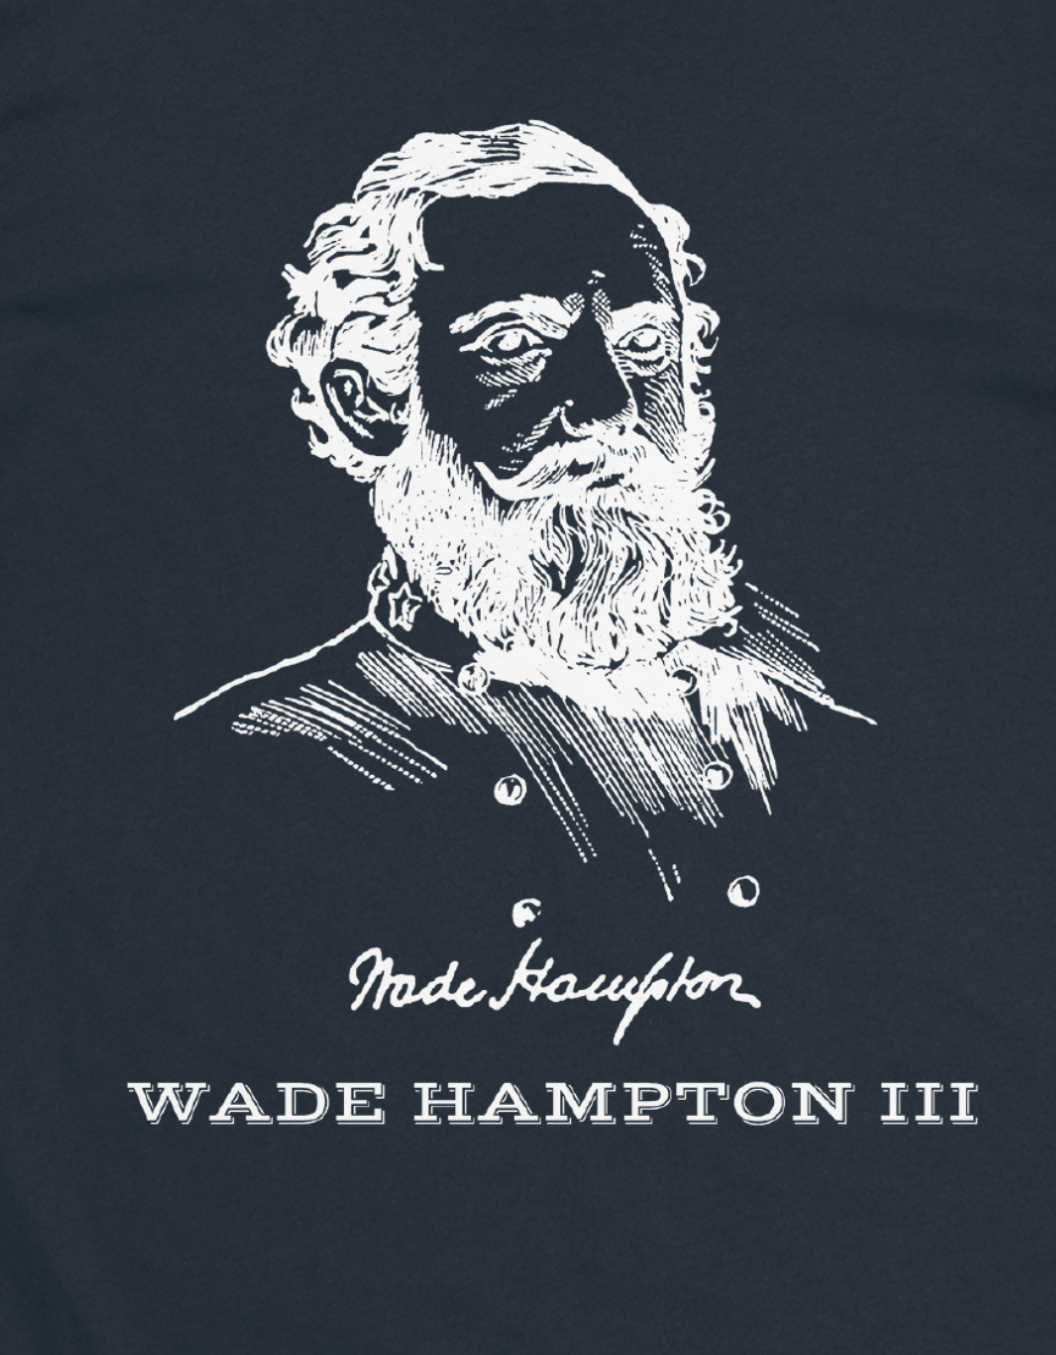 Wade Hampton III - South Carolina T-Shirt